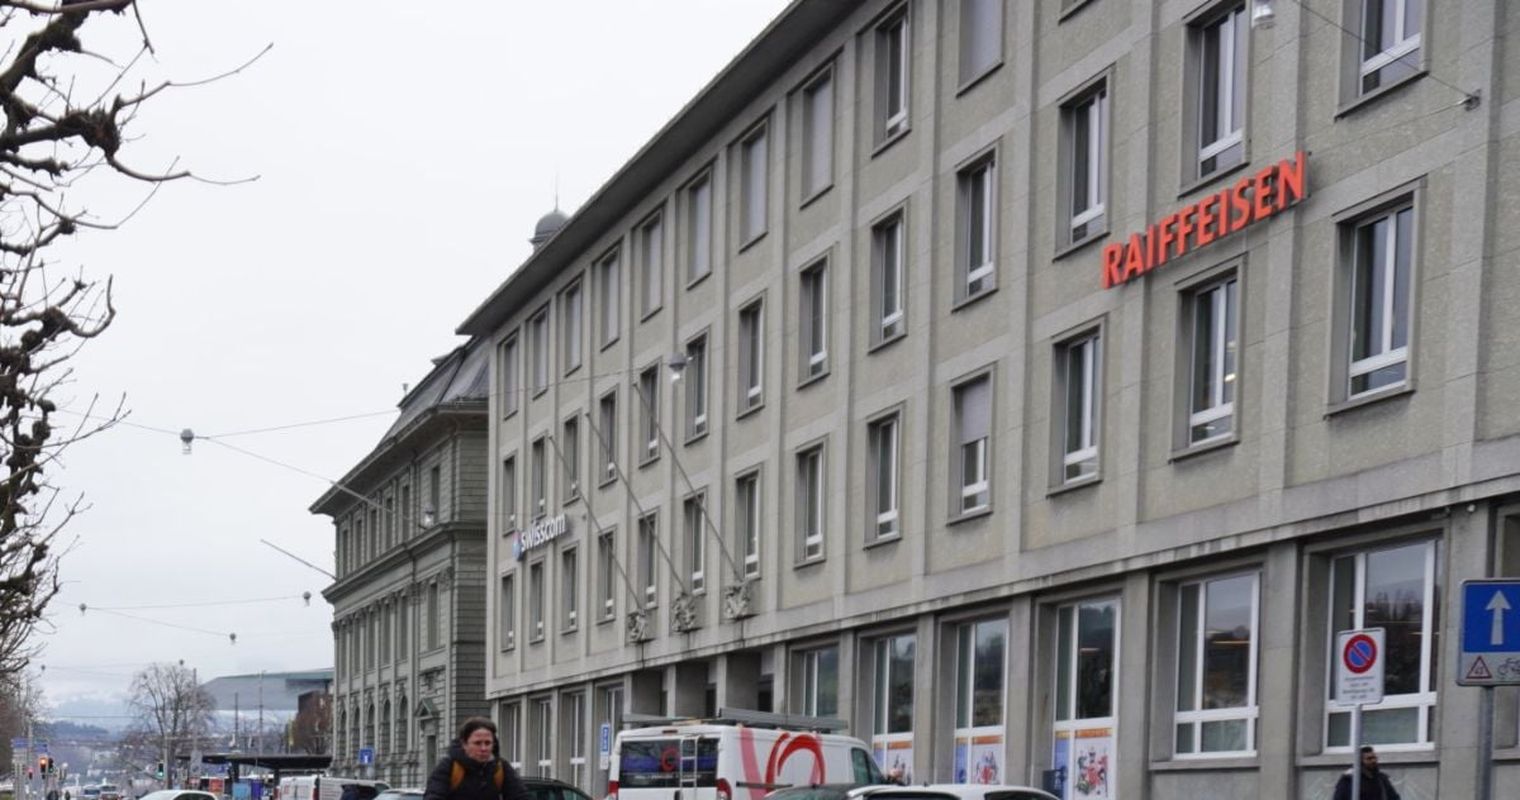 Bargeld: Raiffeisen Luzern verlangt 17 Franken fürs Münzeinzahlen